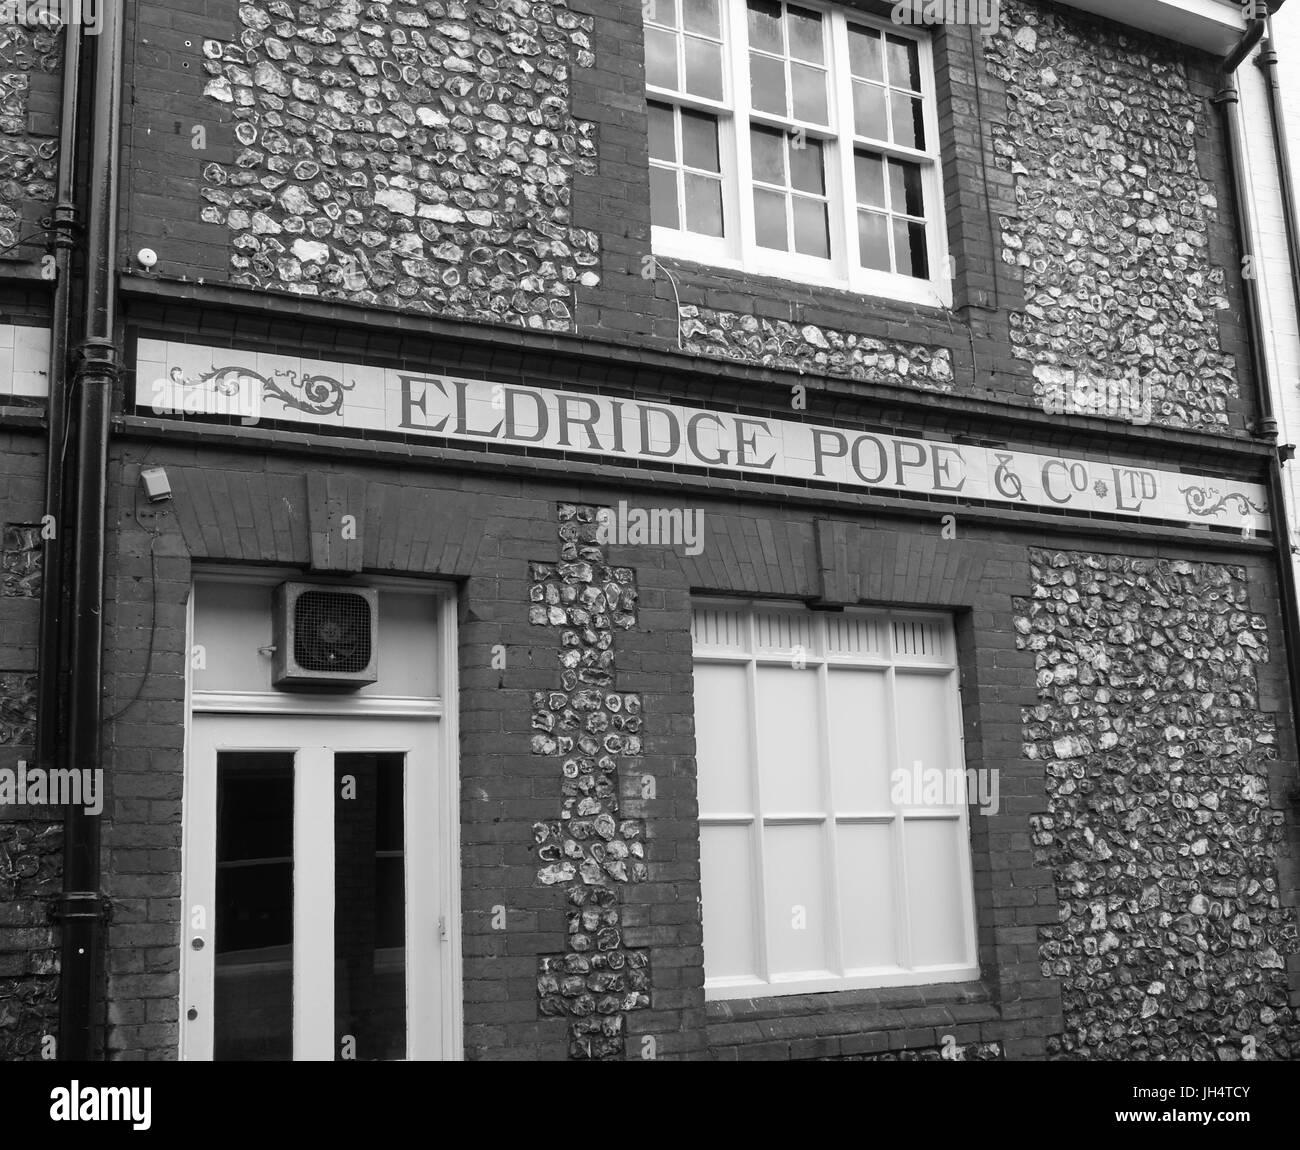 Black and white image of old Eldridge Pope public house signage in Winchester, Hampshire, England, UK Stock Photo